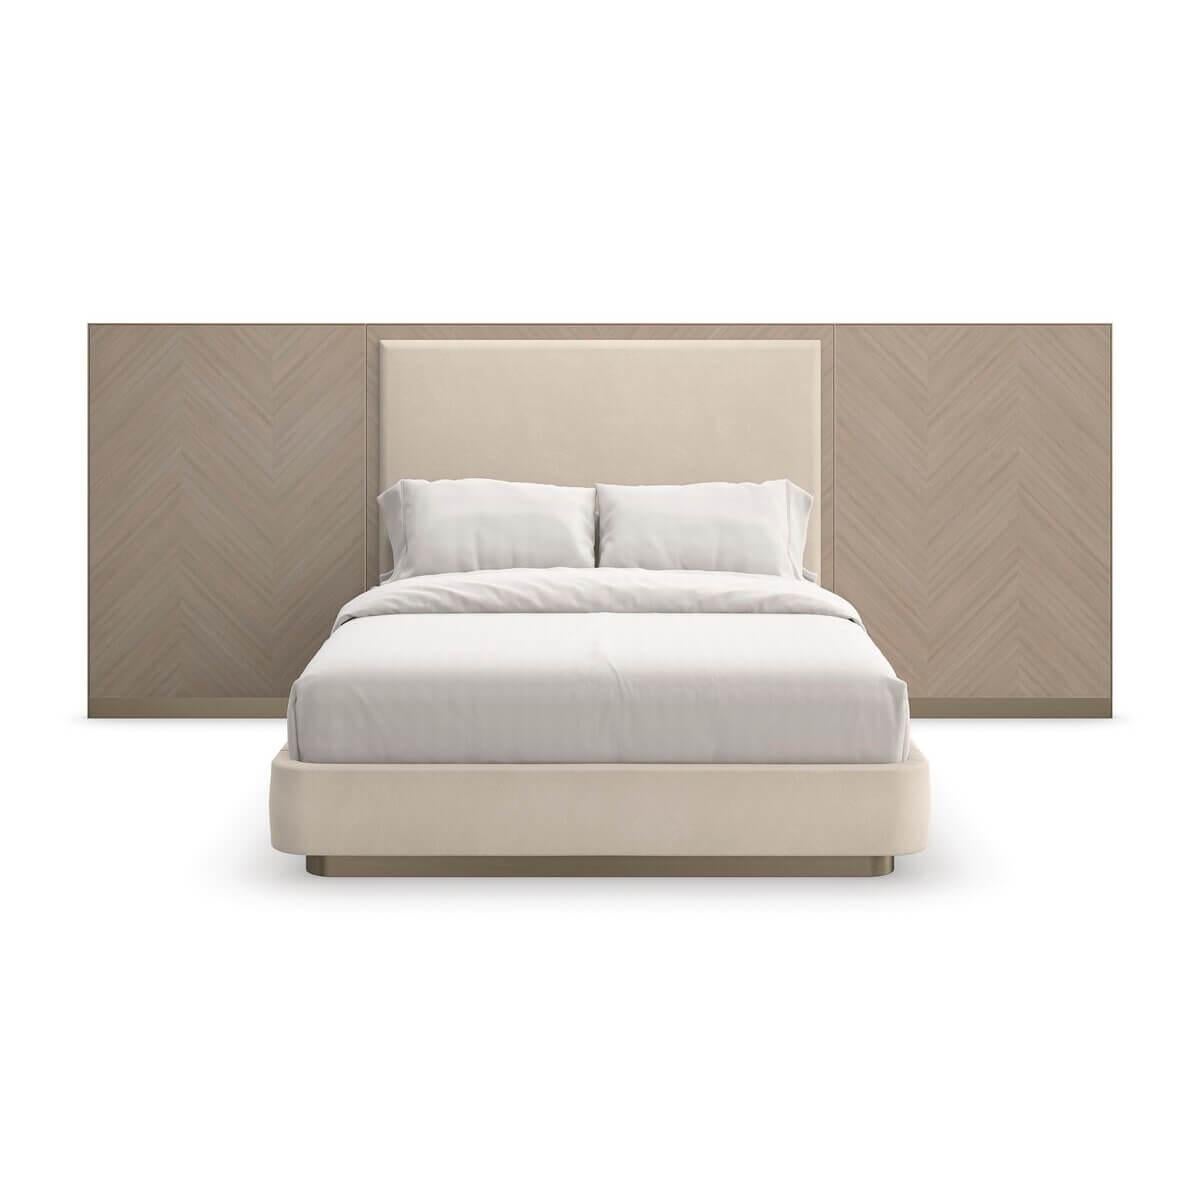 Dieses klassische Bett ist eine geschichtsträchtige Kombination aus MATERIAL und Form und besticht durch eine beruhigende, warme und einladende Farbpalette.

Die getäfelten Flügel sind mit Koto-Furnieren umrahmt und weisen ein subtiles